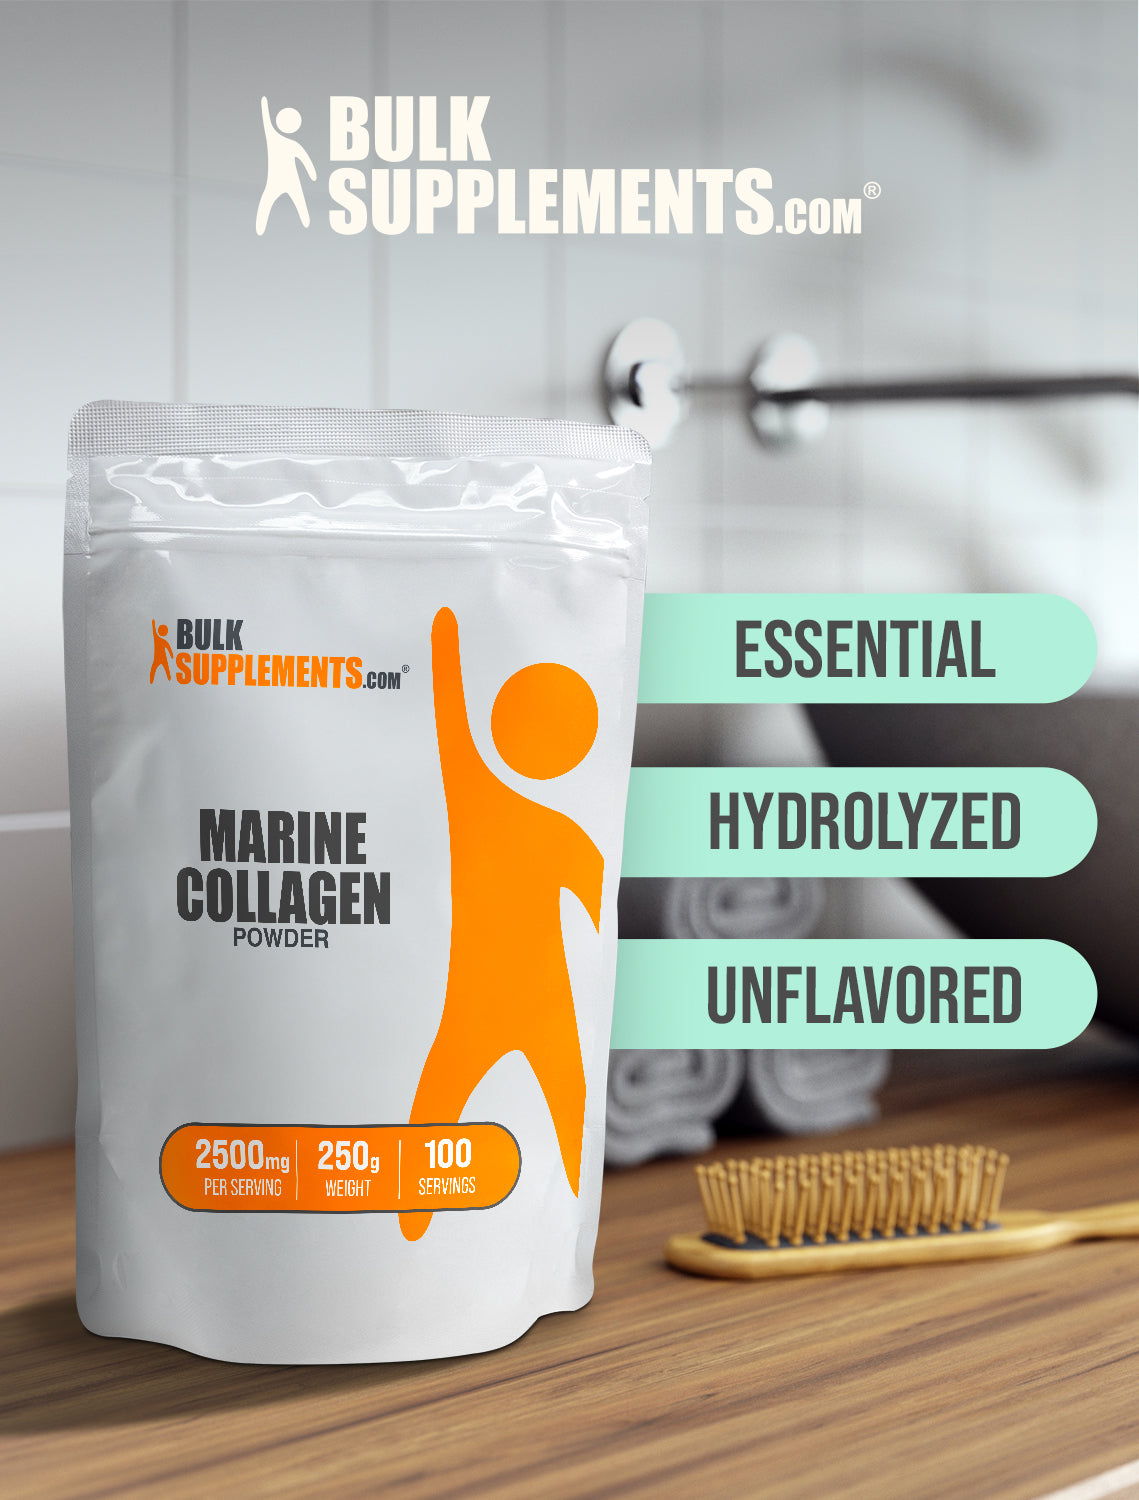 Marine collagen powder 250g keywords image